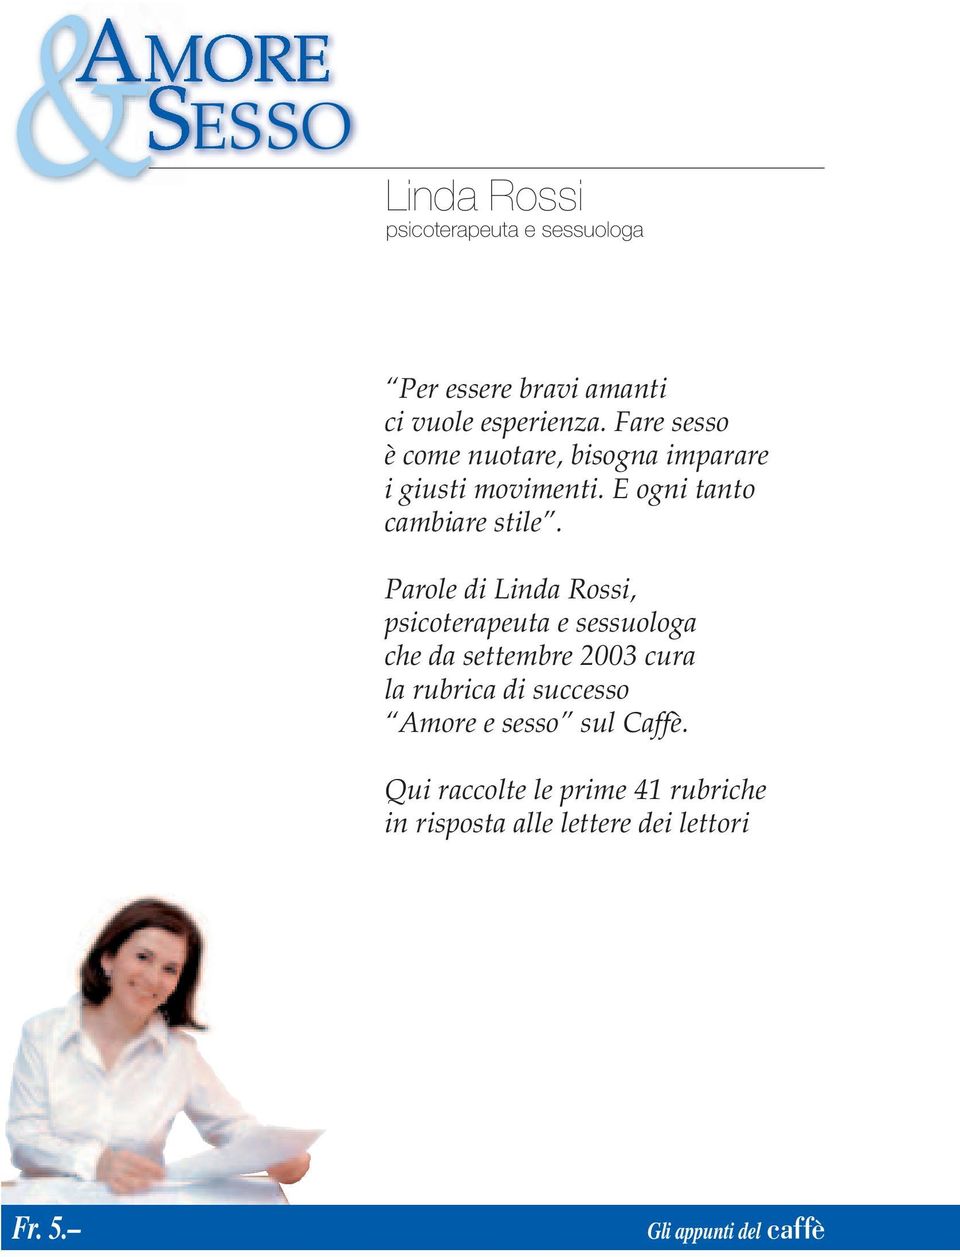 Parole di Linda Rossi, psicoterapeuta e sessuologa che da settembre 2003 cura la rubrica di successo